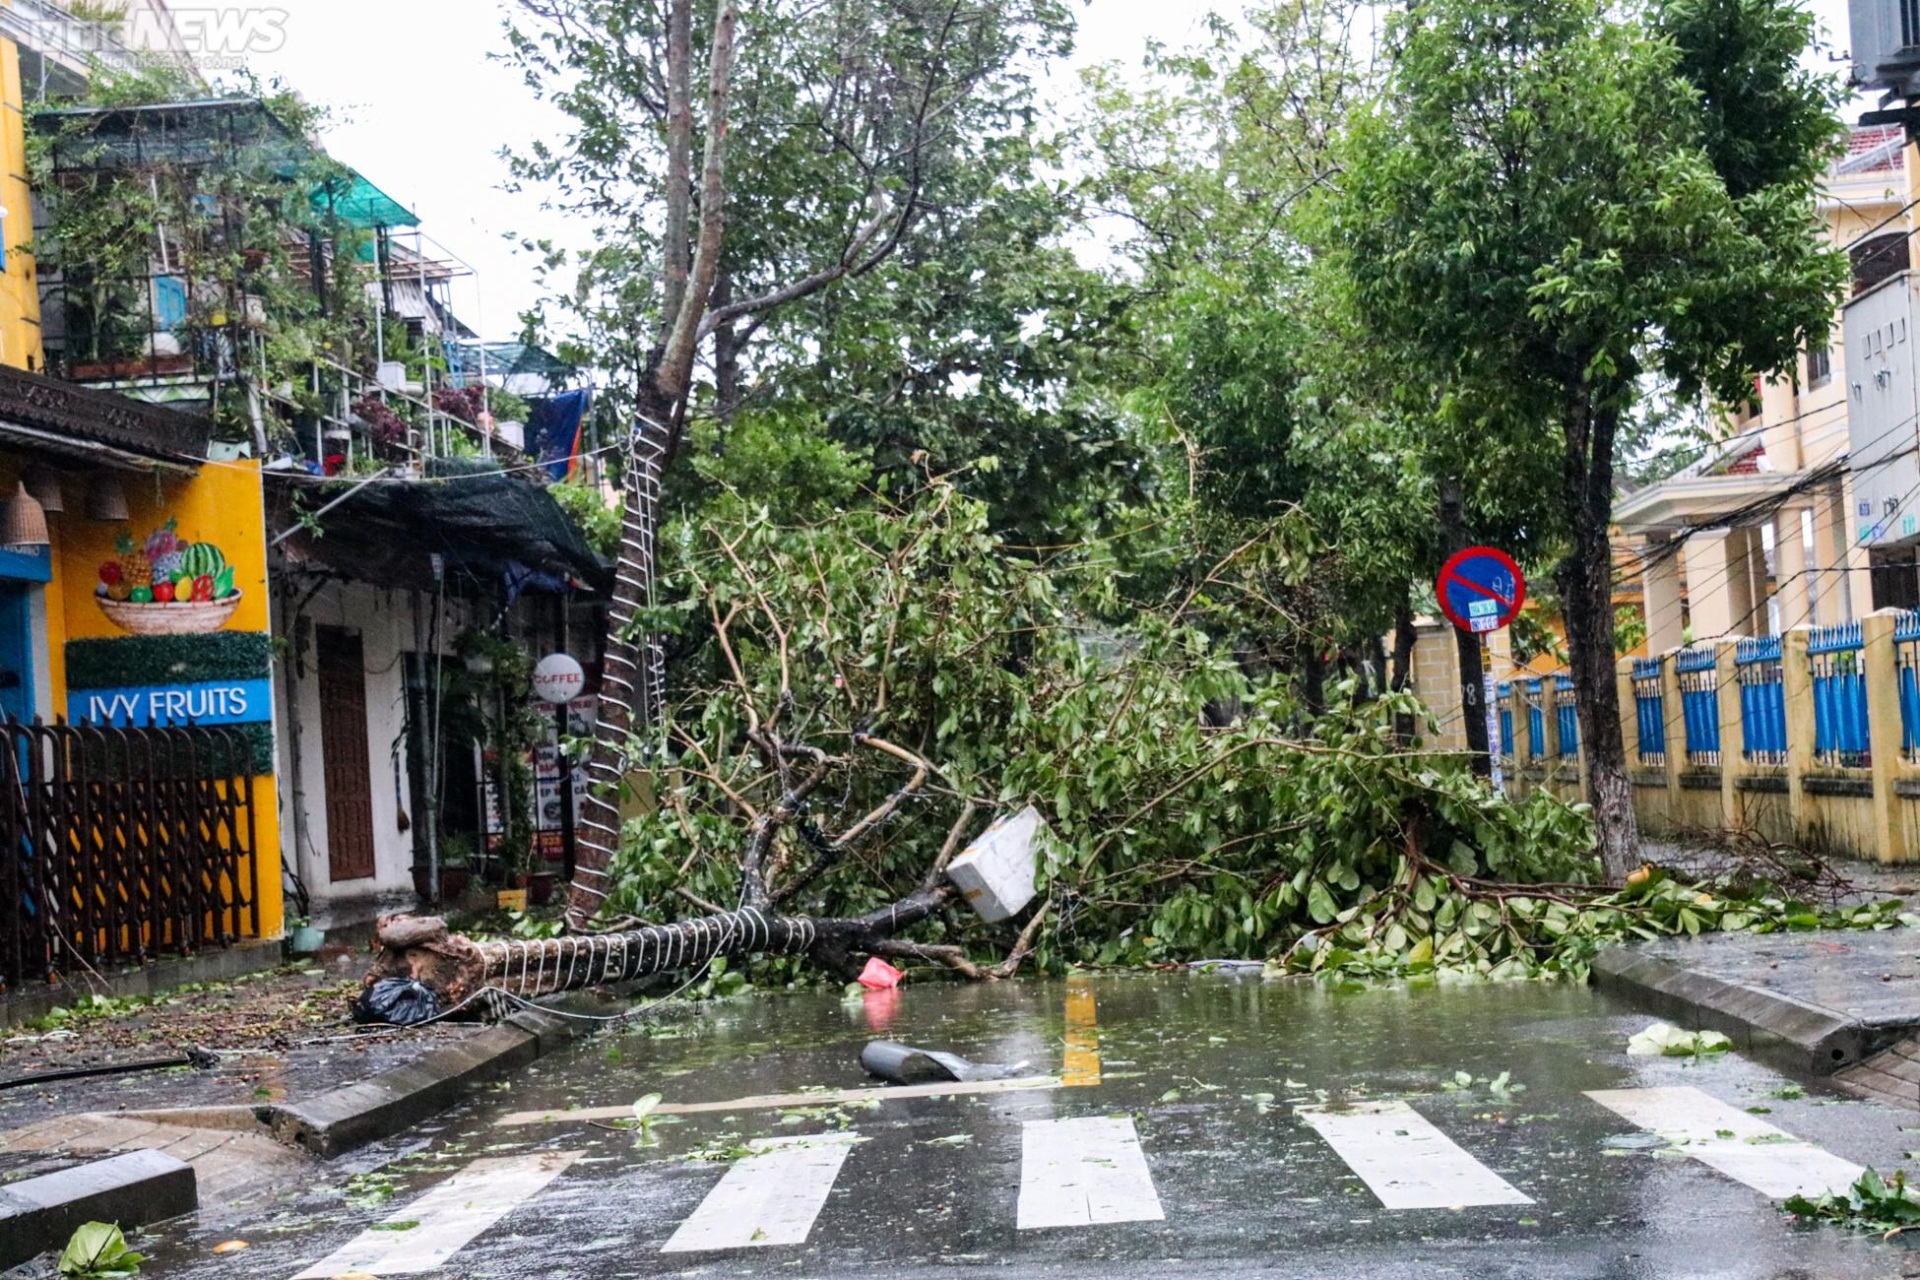 Khung cảnh tang thương, nước sông dâng ngập chợ và nhà dân, cây cối đổ sập, bật gốc tại Quảng Nam sau bão - Ảnh 1